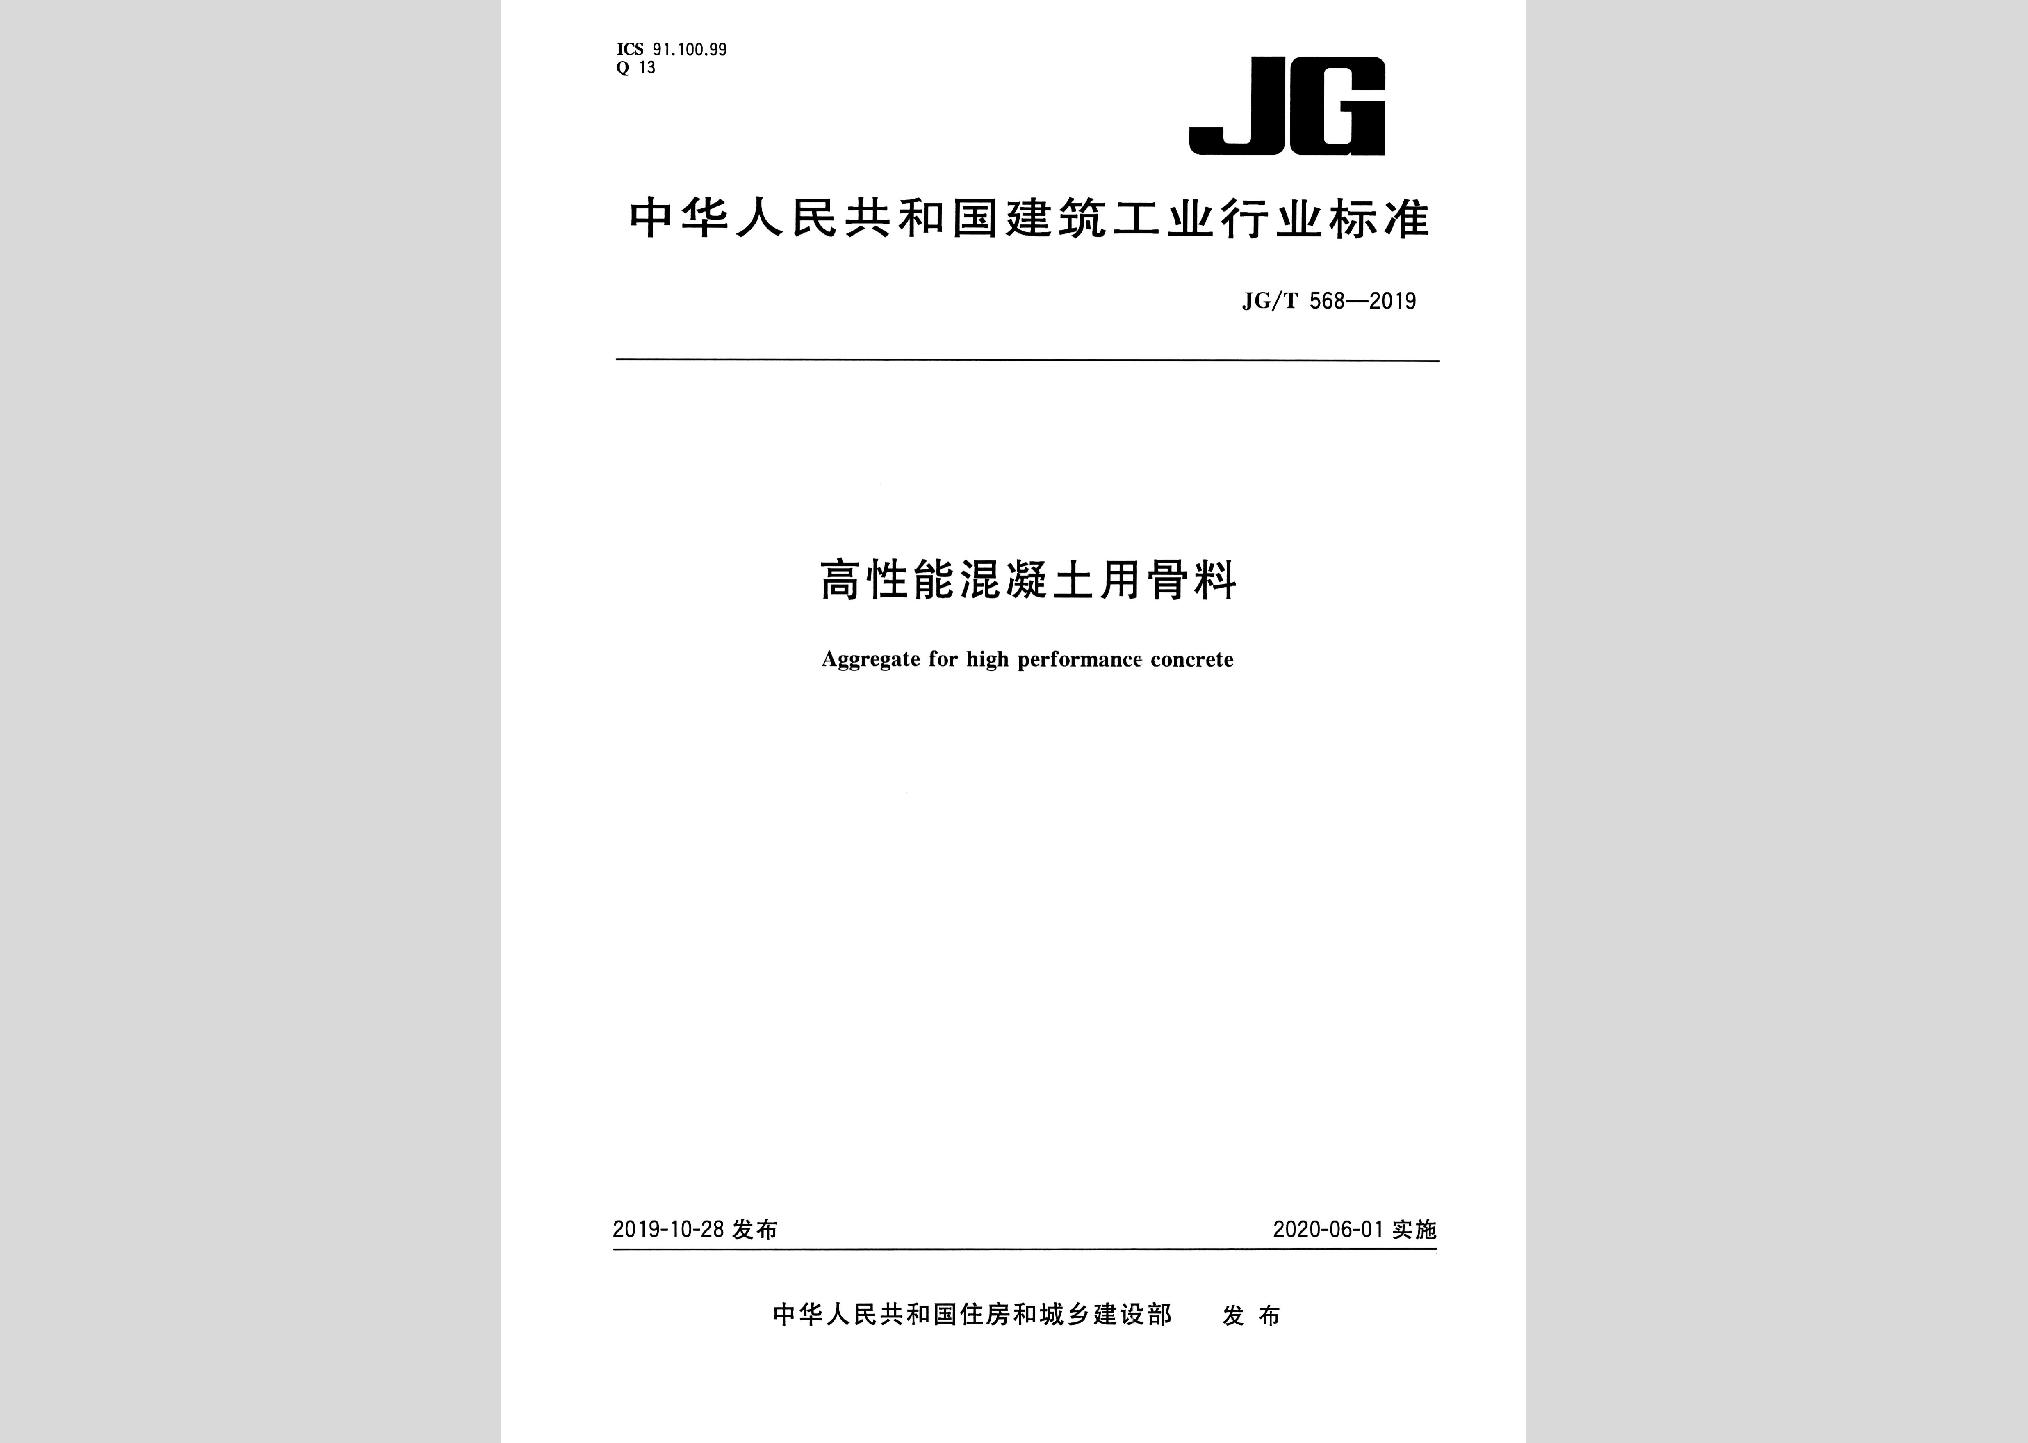 JG/T568-2019：高性能混凝土用骨料